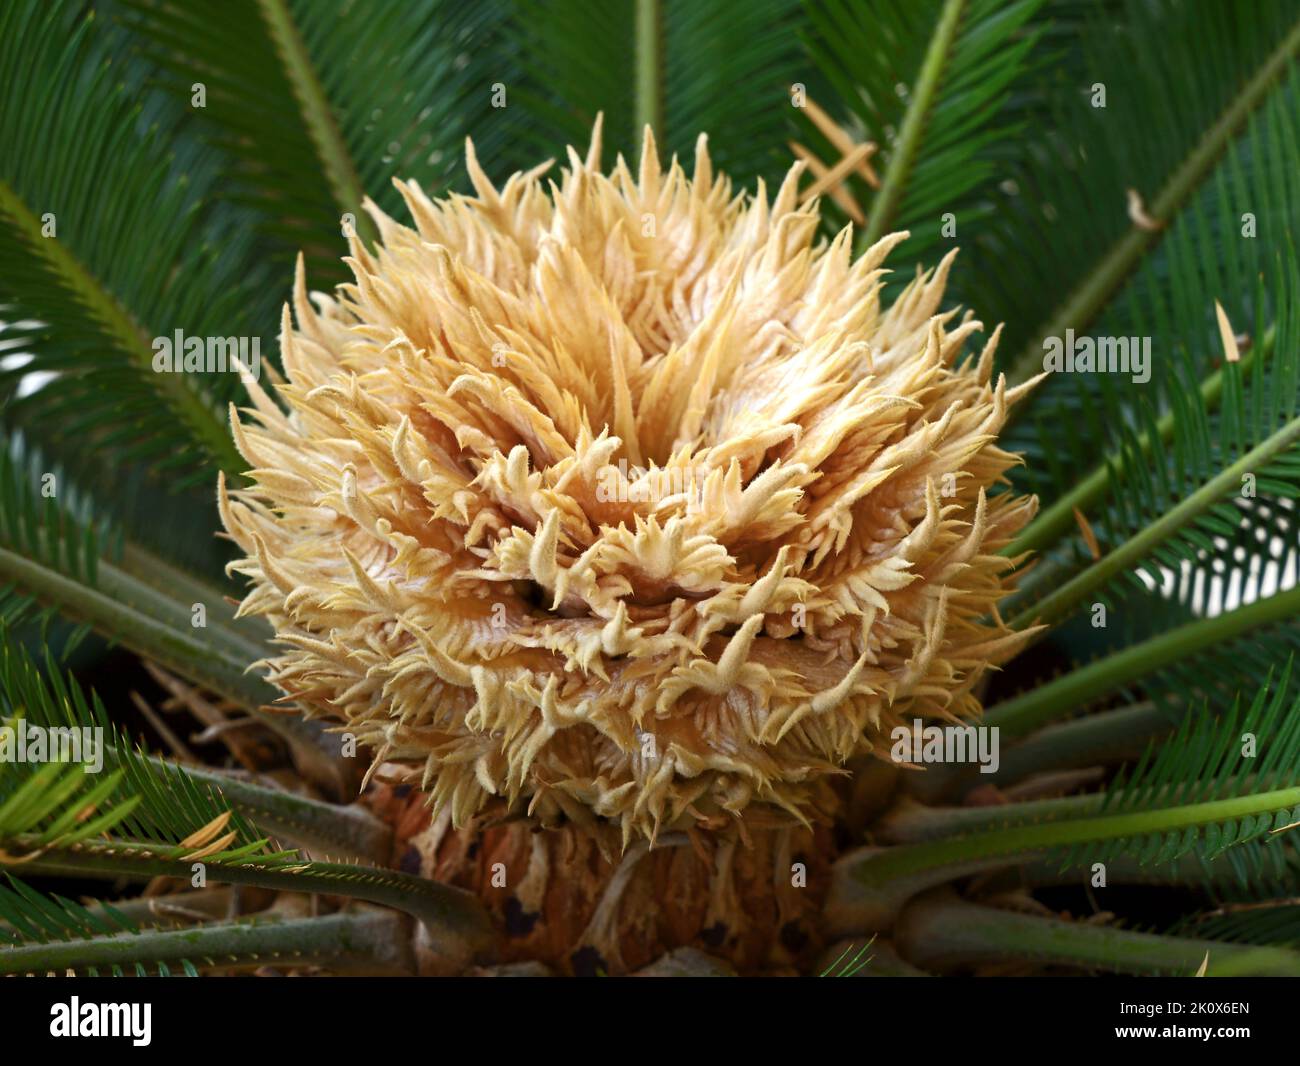 close up of a sago palm, blossom of cycas revoluta Stock Photo